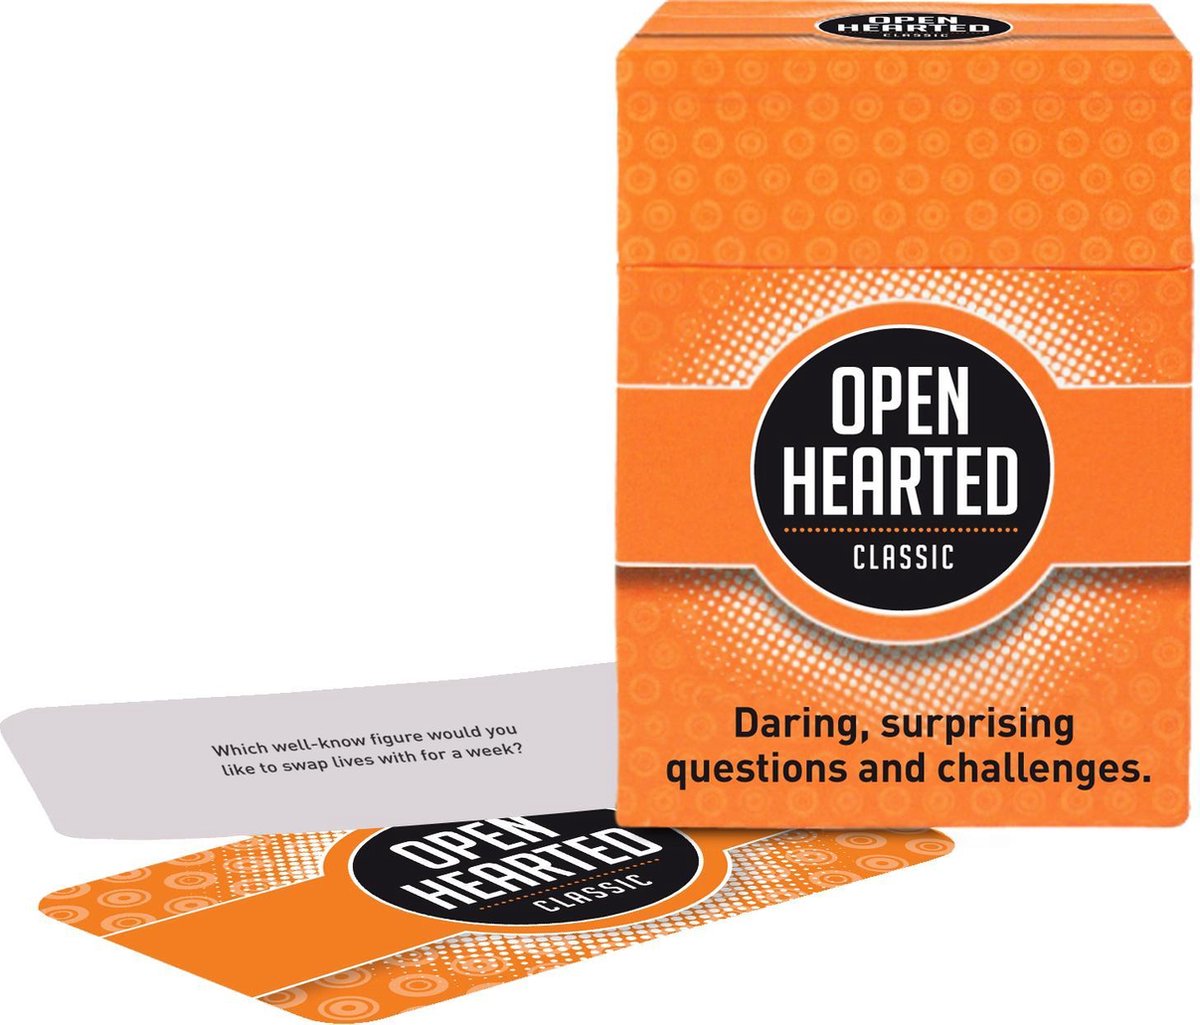 Openhearted Classic - Engelstalige versie van Openhartig Classic - Gespreksstarter - Open Up!